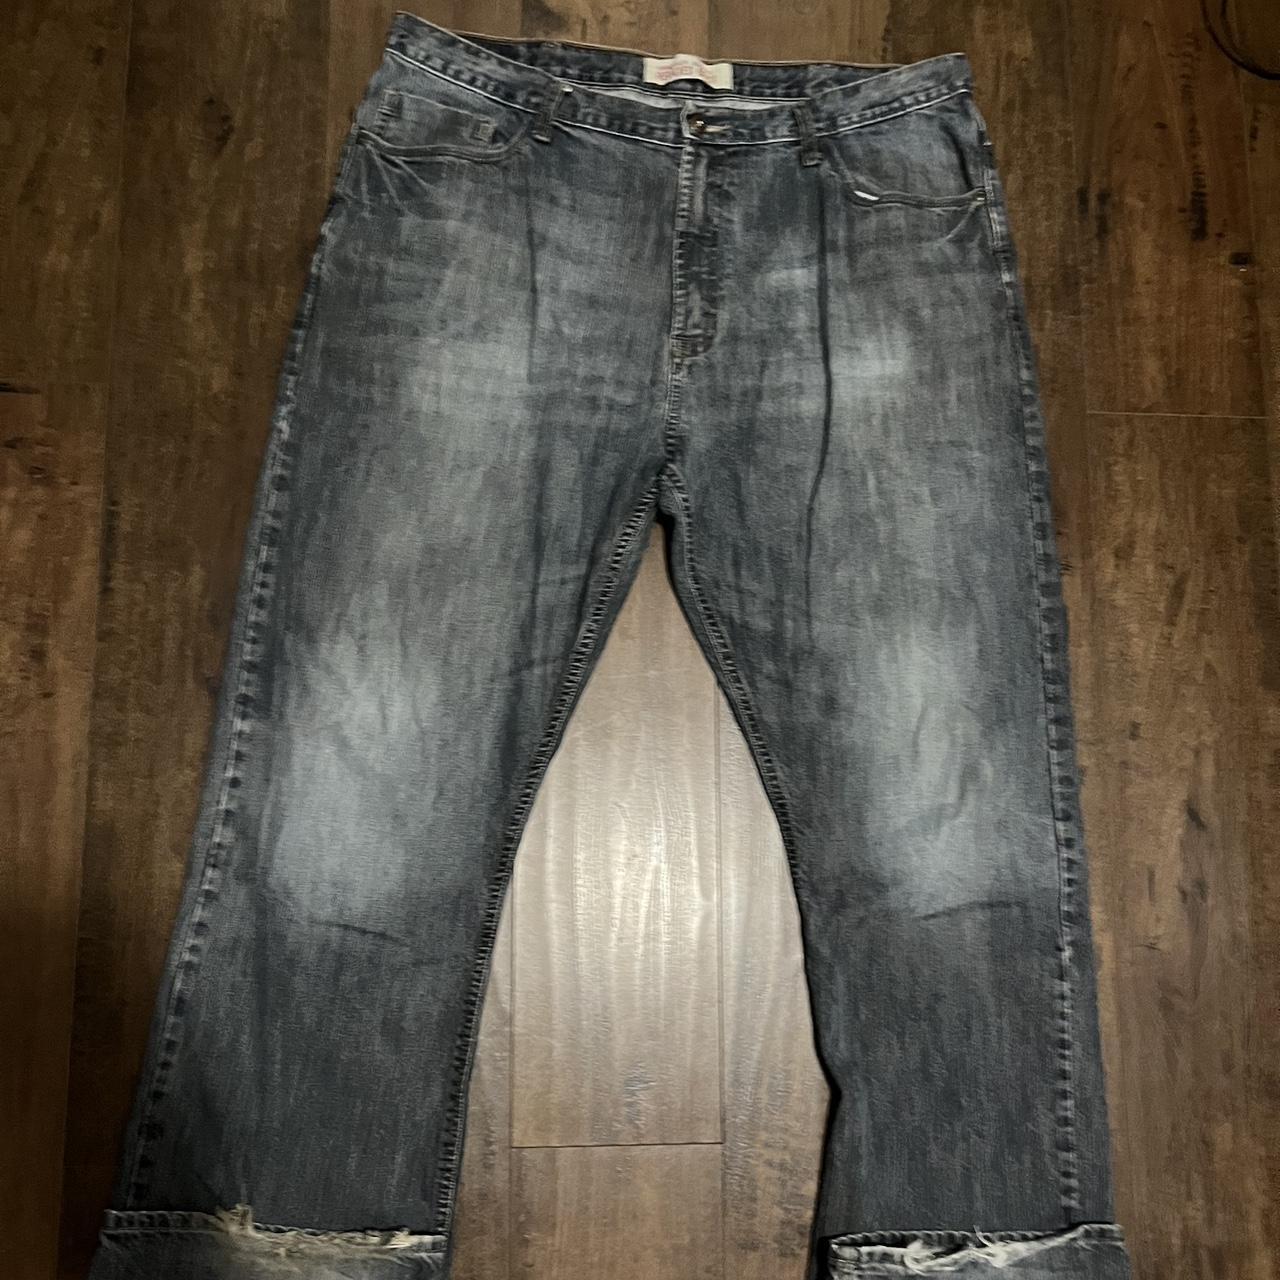 Wrangler washed vintage jeans - Depop